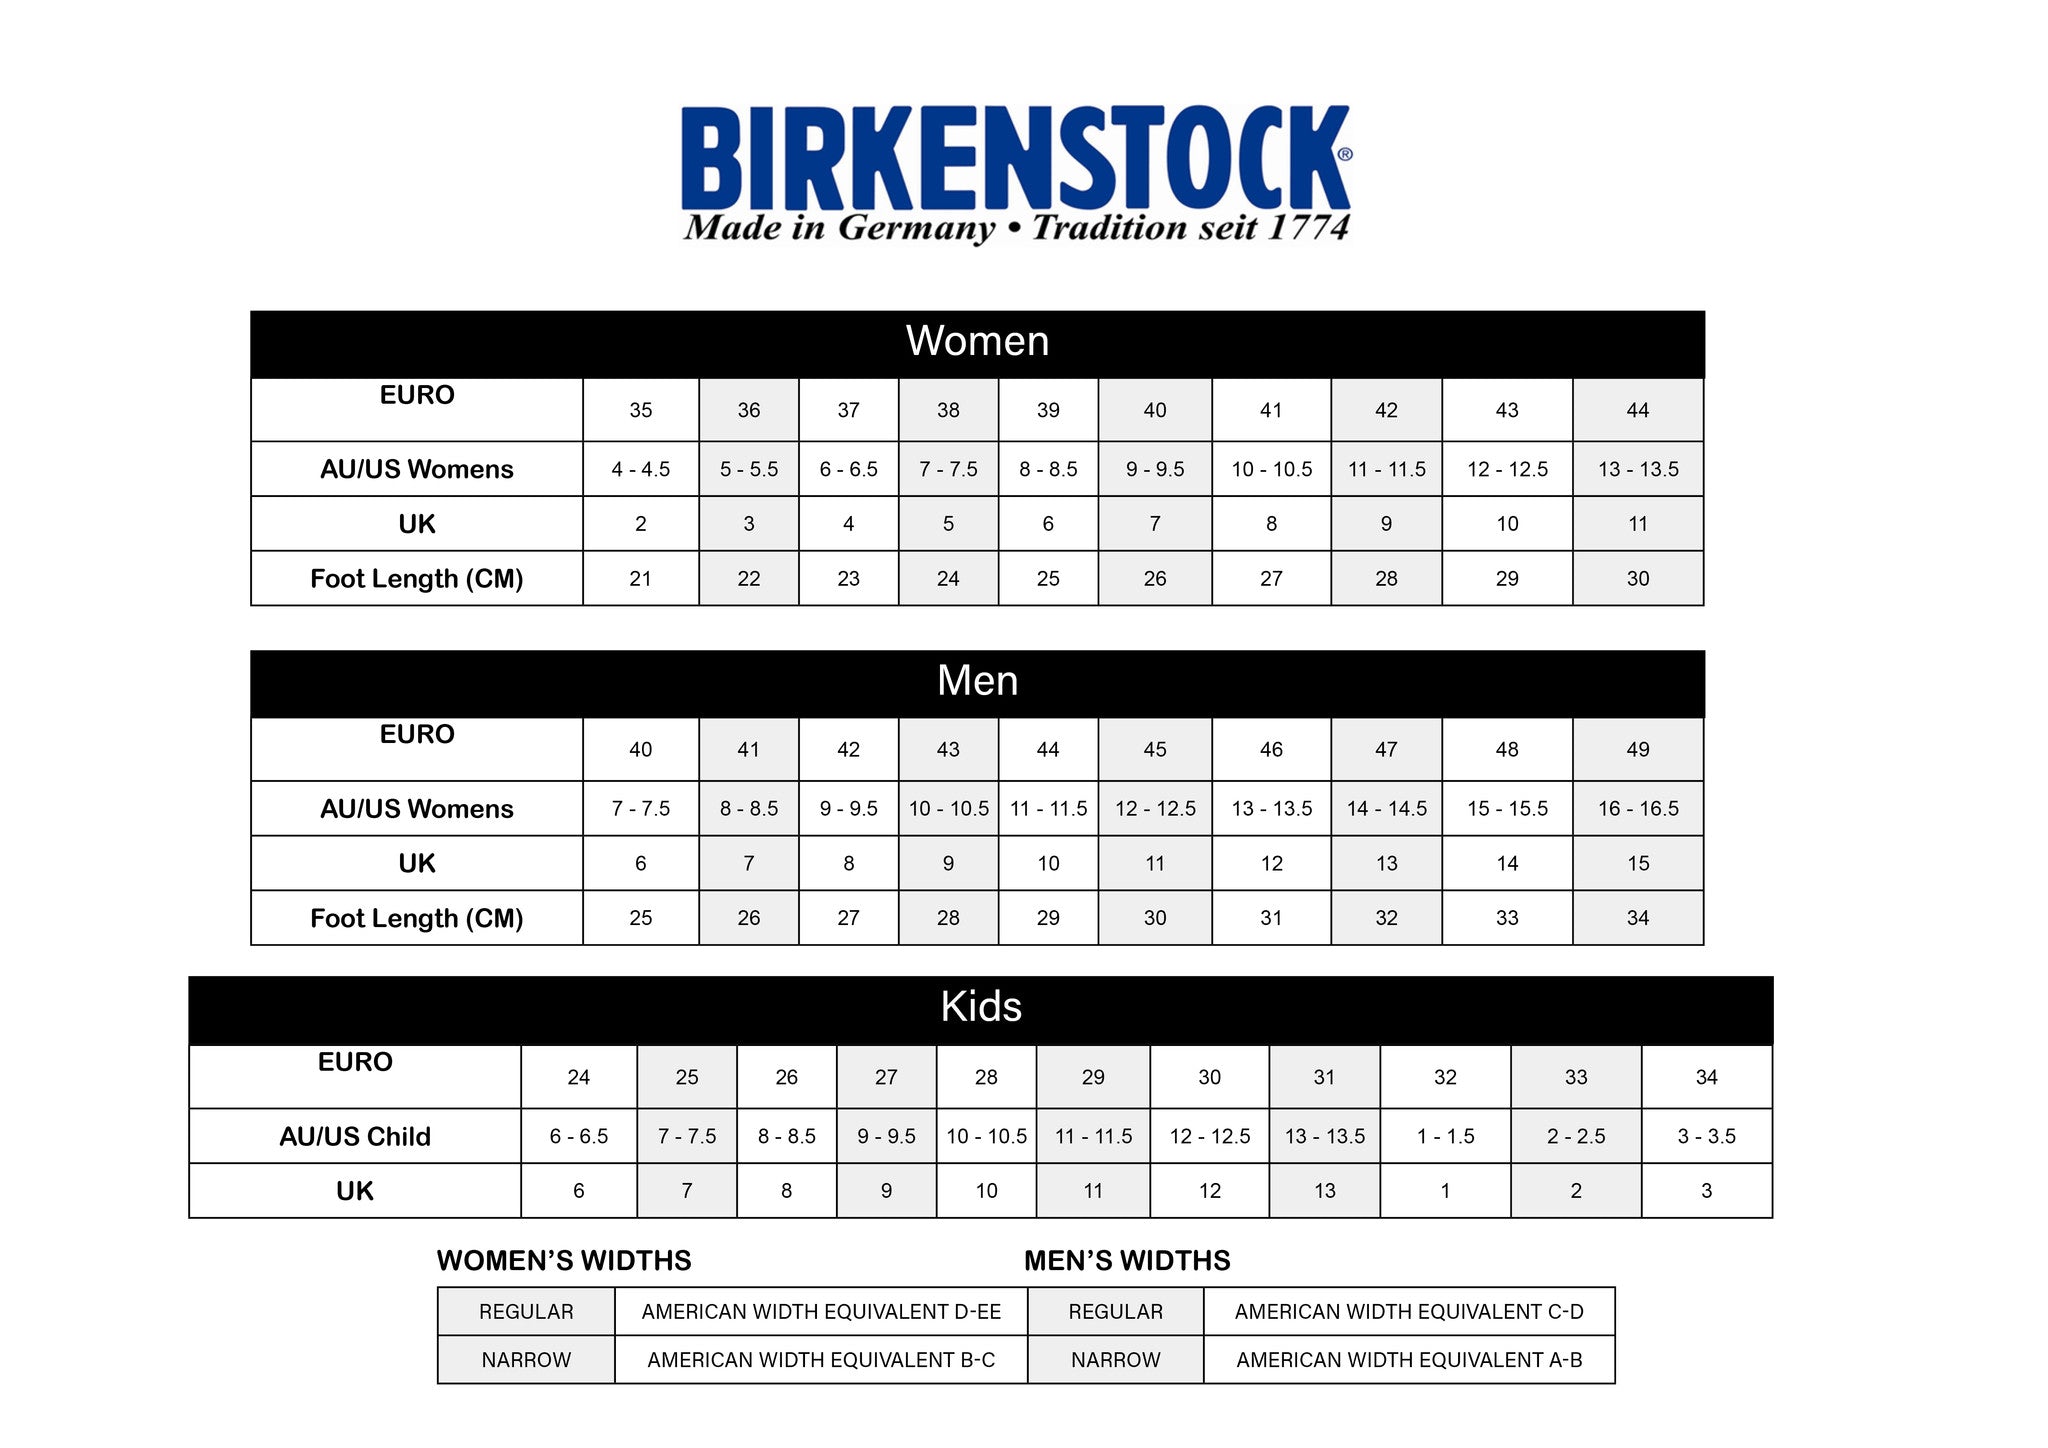 Birkenstock Size Chart In Cm